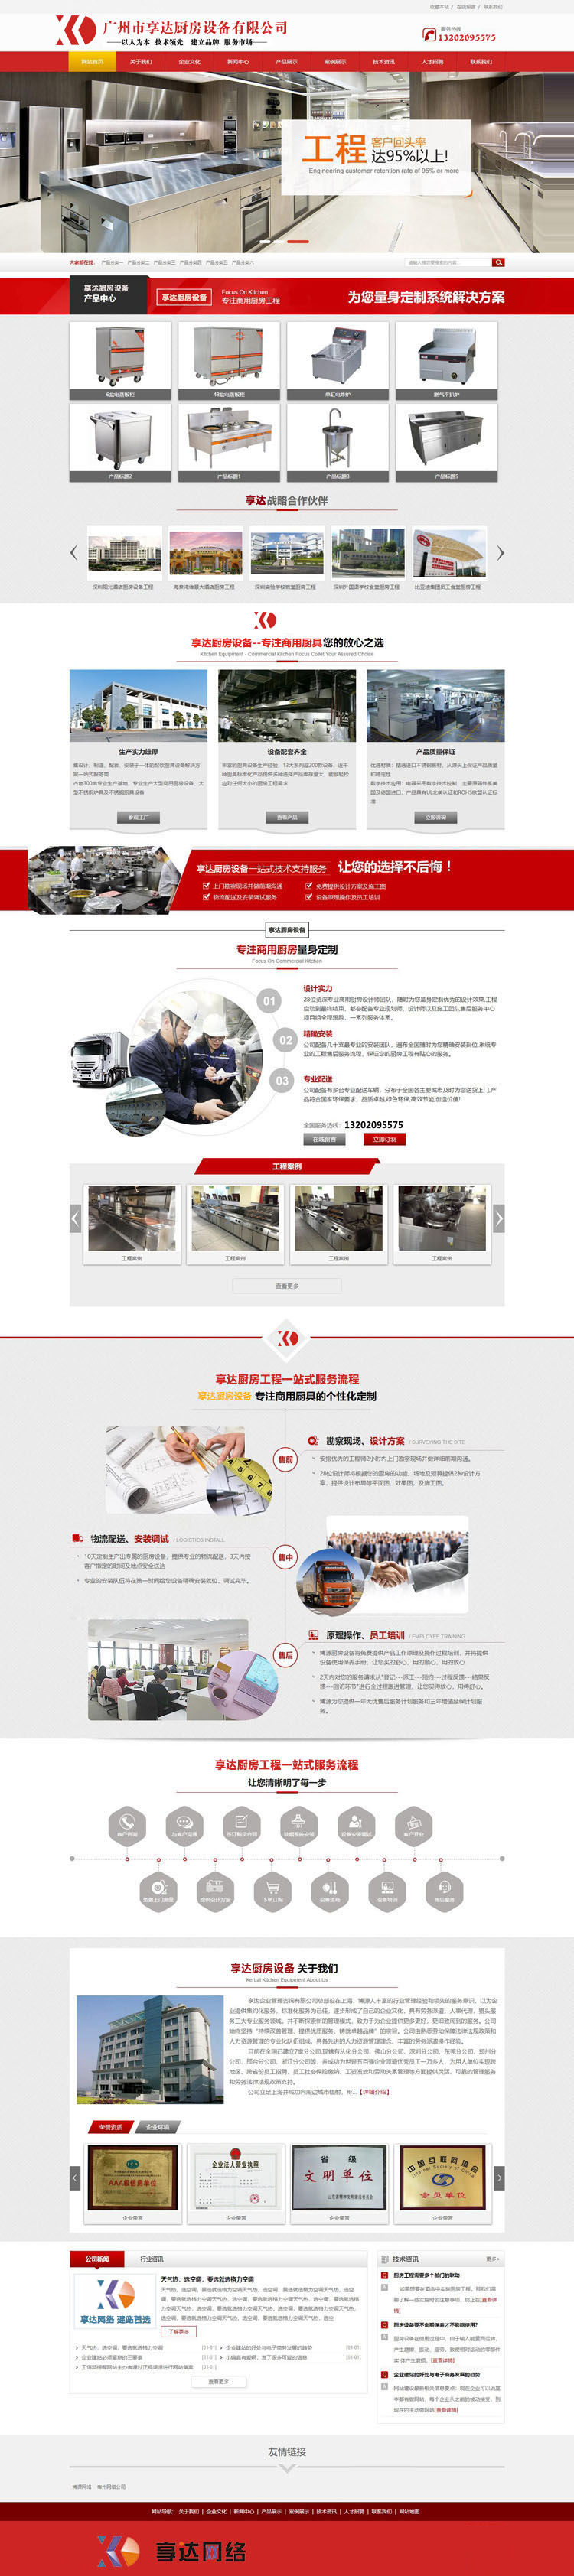 酒店商用厨房厨具设备网站建设 | 宁夏厨具厨房设备企业网站设计